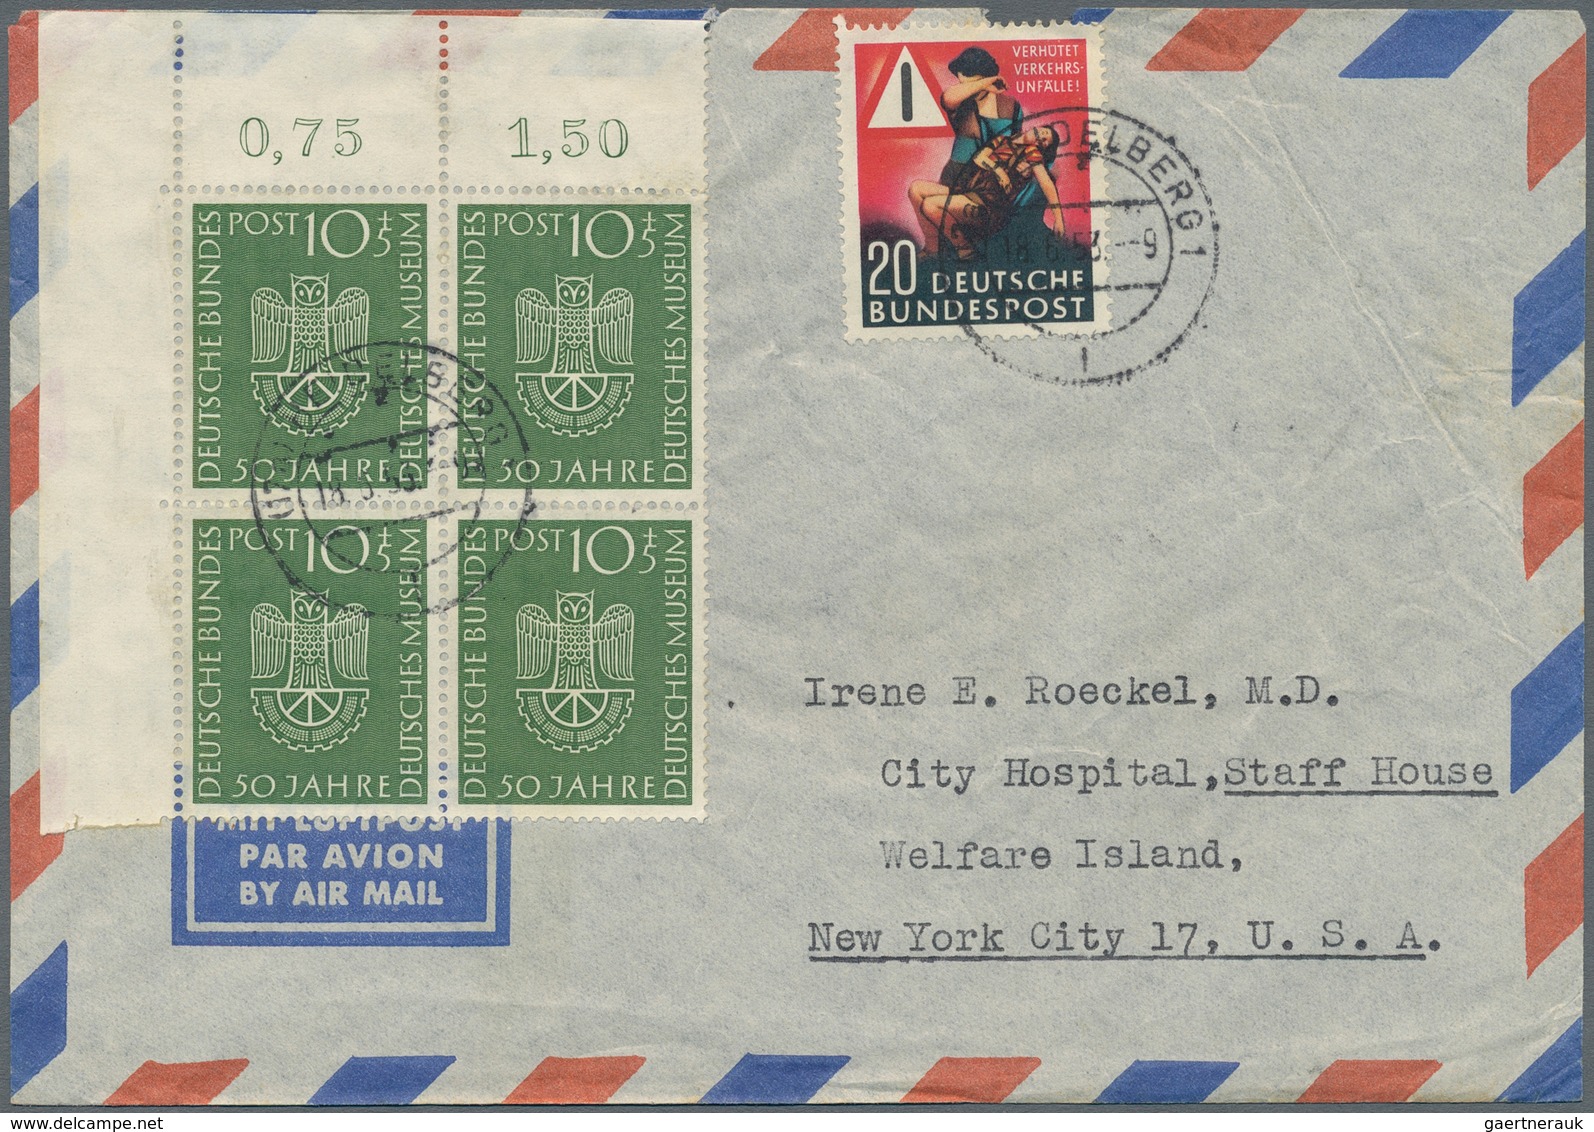 Bundesrepublik Deutschland: 1953, Luftpostbrief Ab HEIDELBERG Frankiert Mit 10+5 Pfg. Deutsches Muse - Covers & Documents